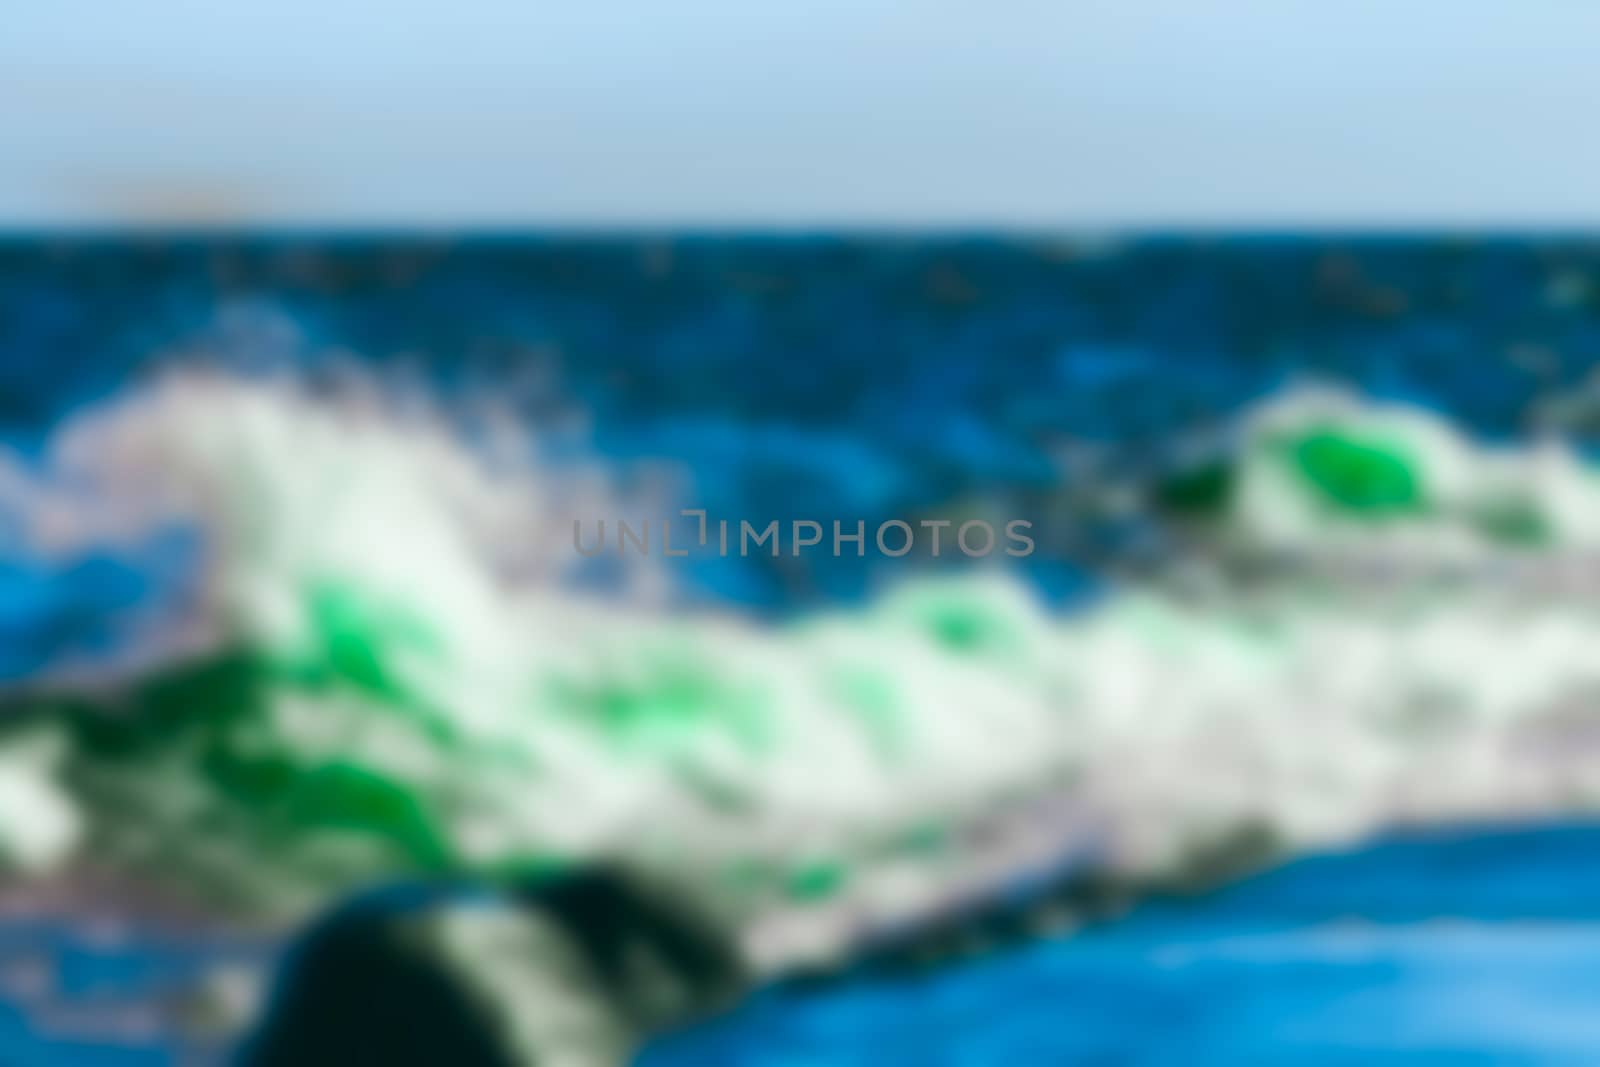 Ocean wawes - blurred image by sengnsp